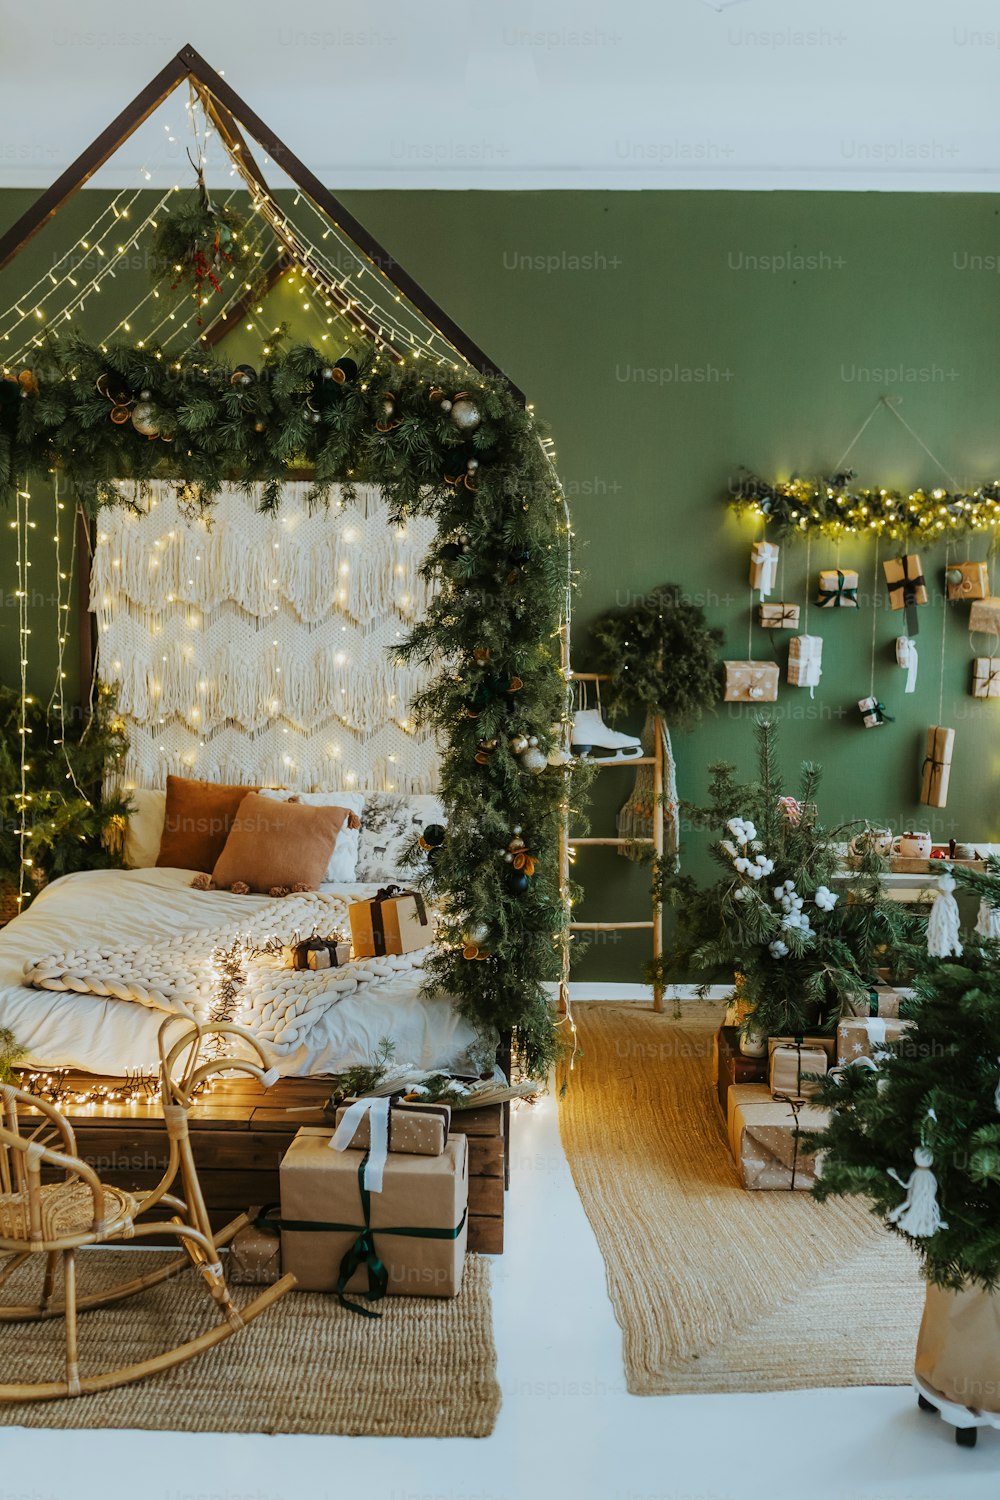 Un dormitorio decorado para Navidad con luces y regalos